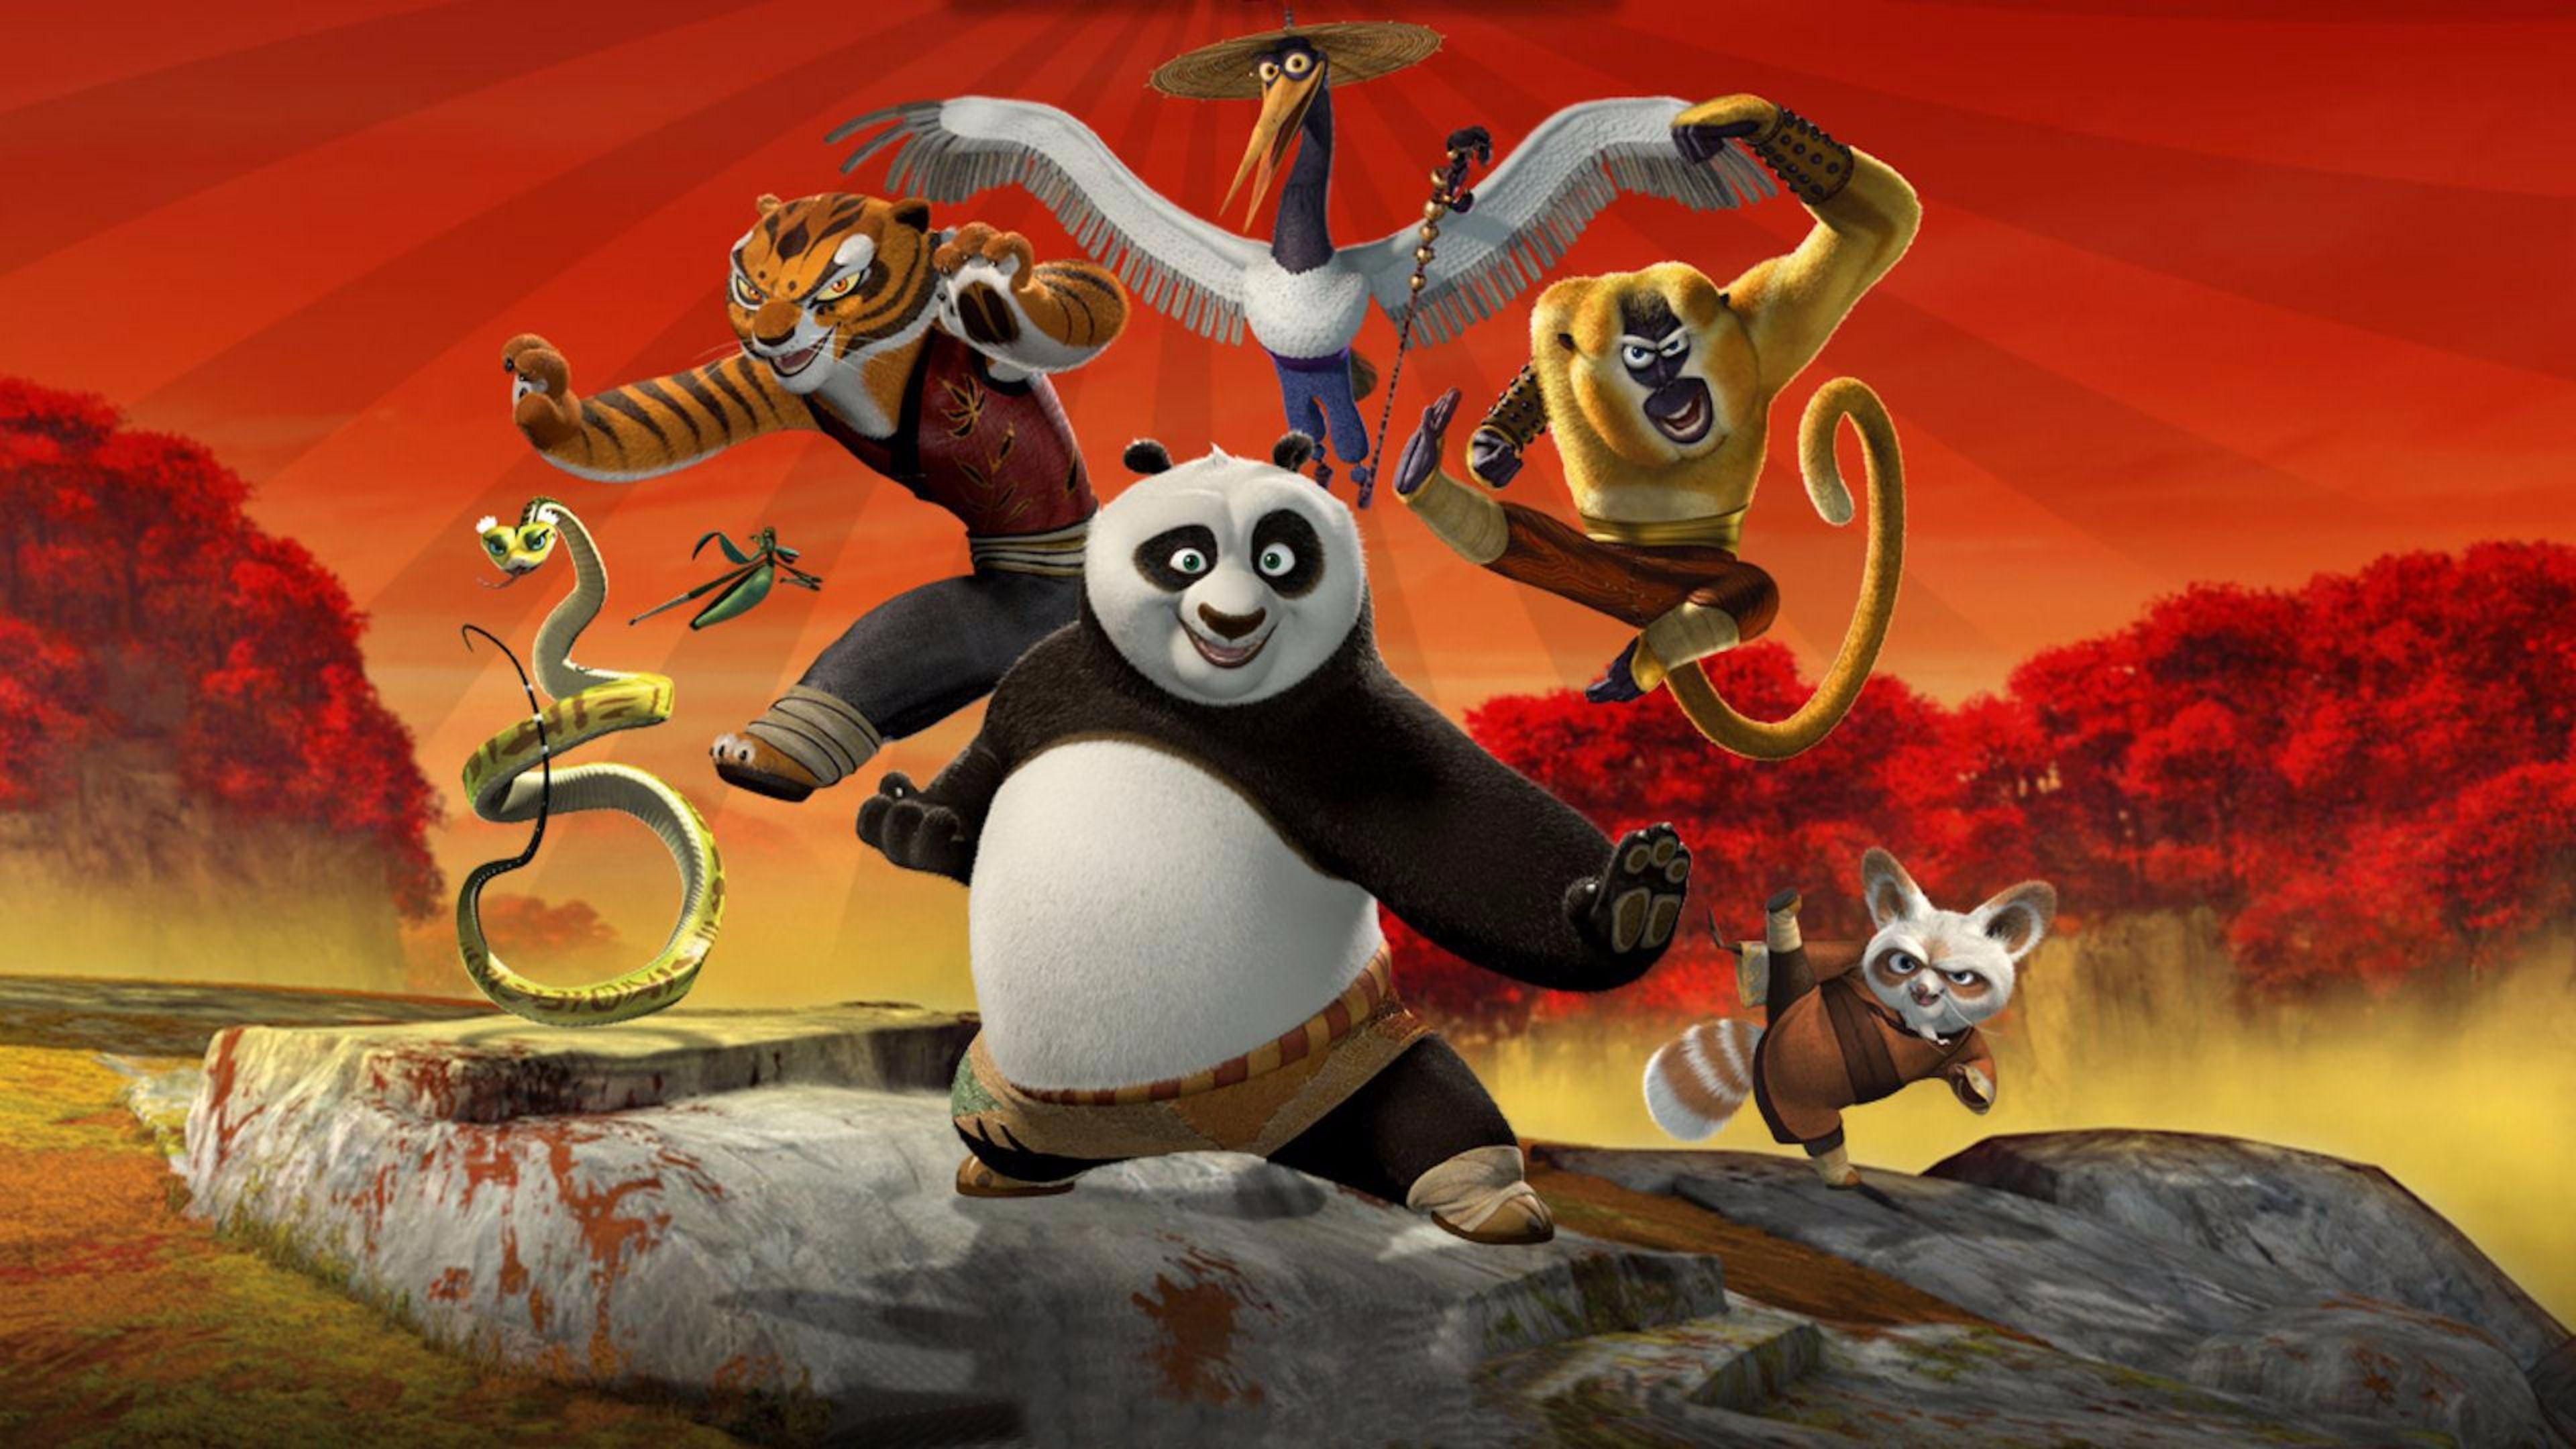 Kids Kung Fu Panda 3 Movie 4K Wallpaper. Free 4K Wallpaper